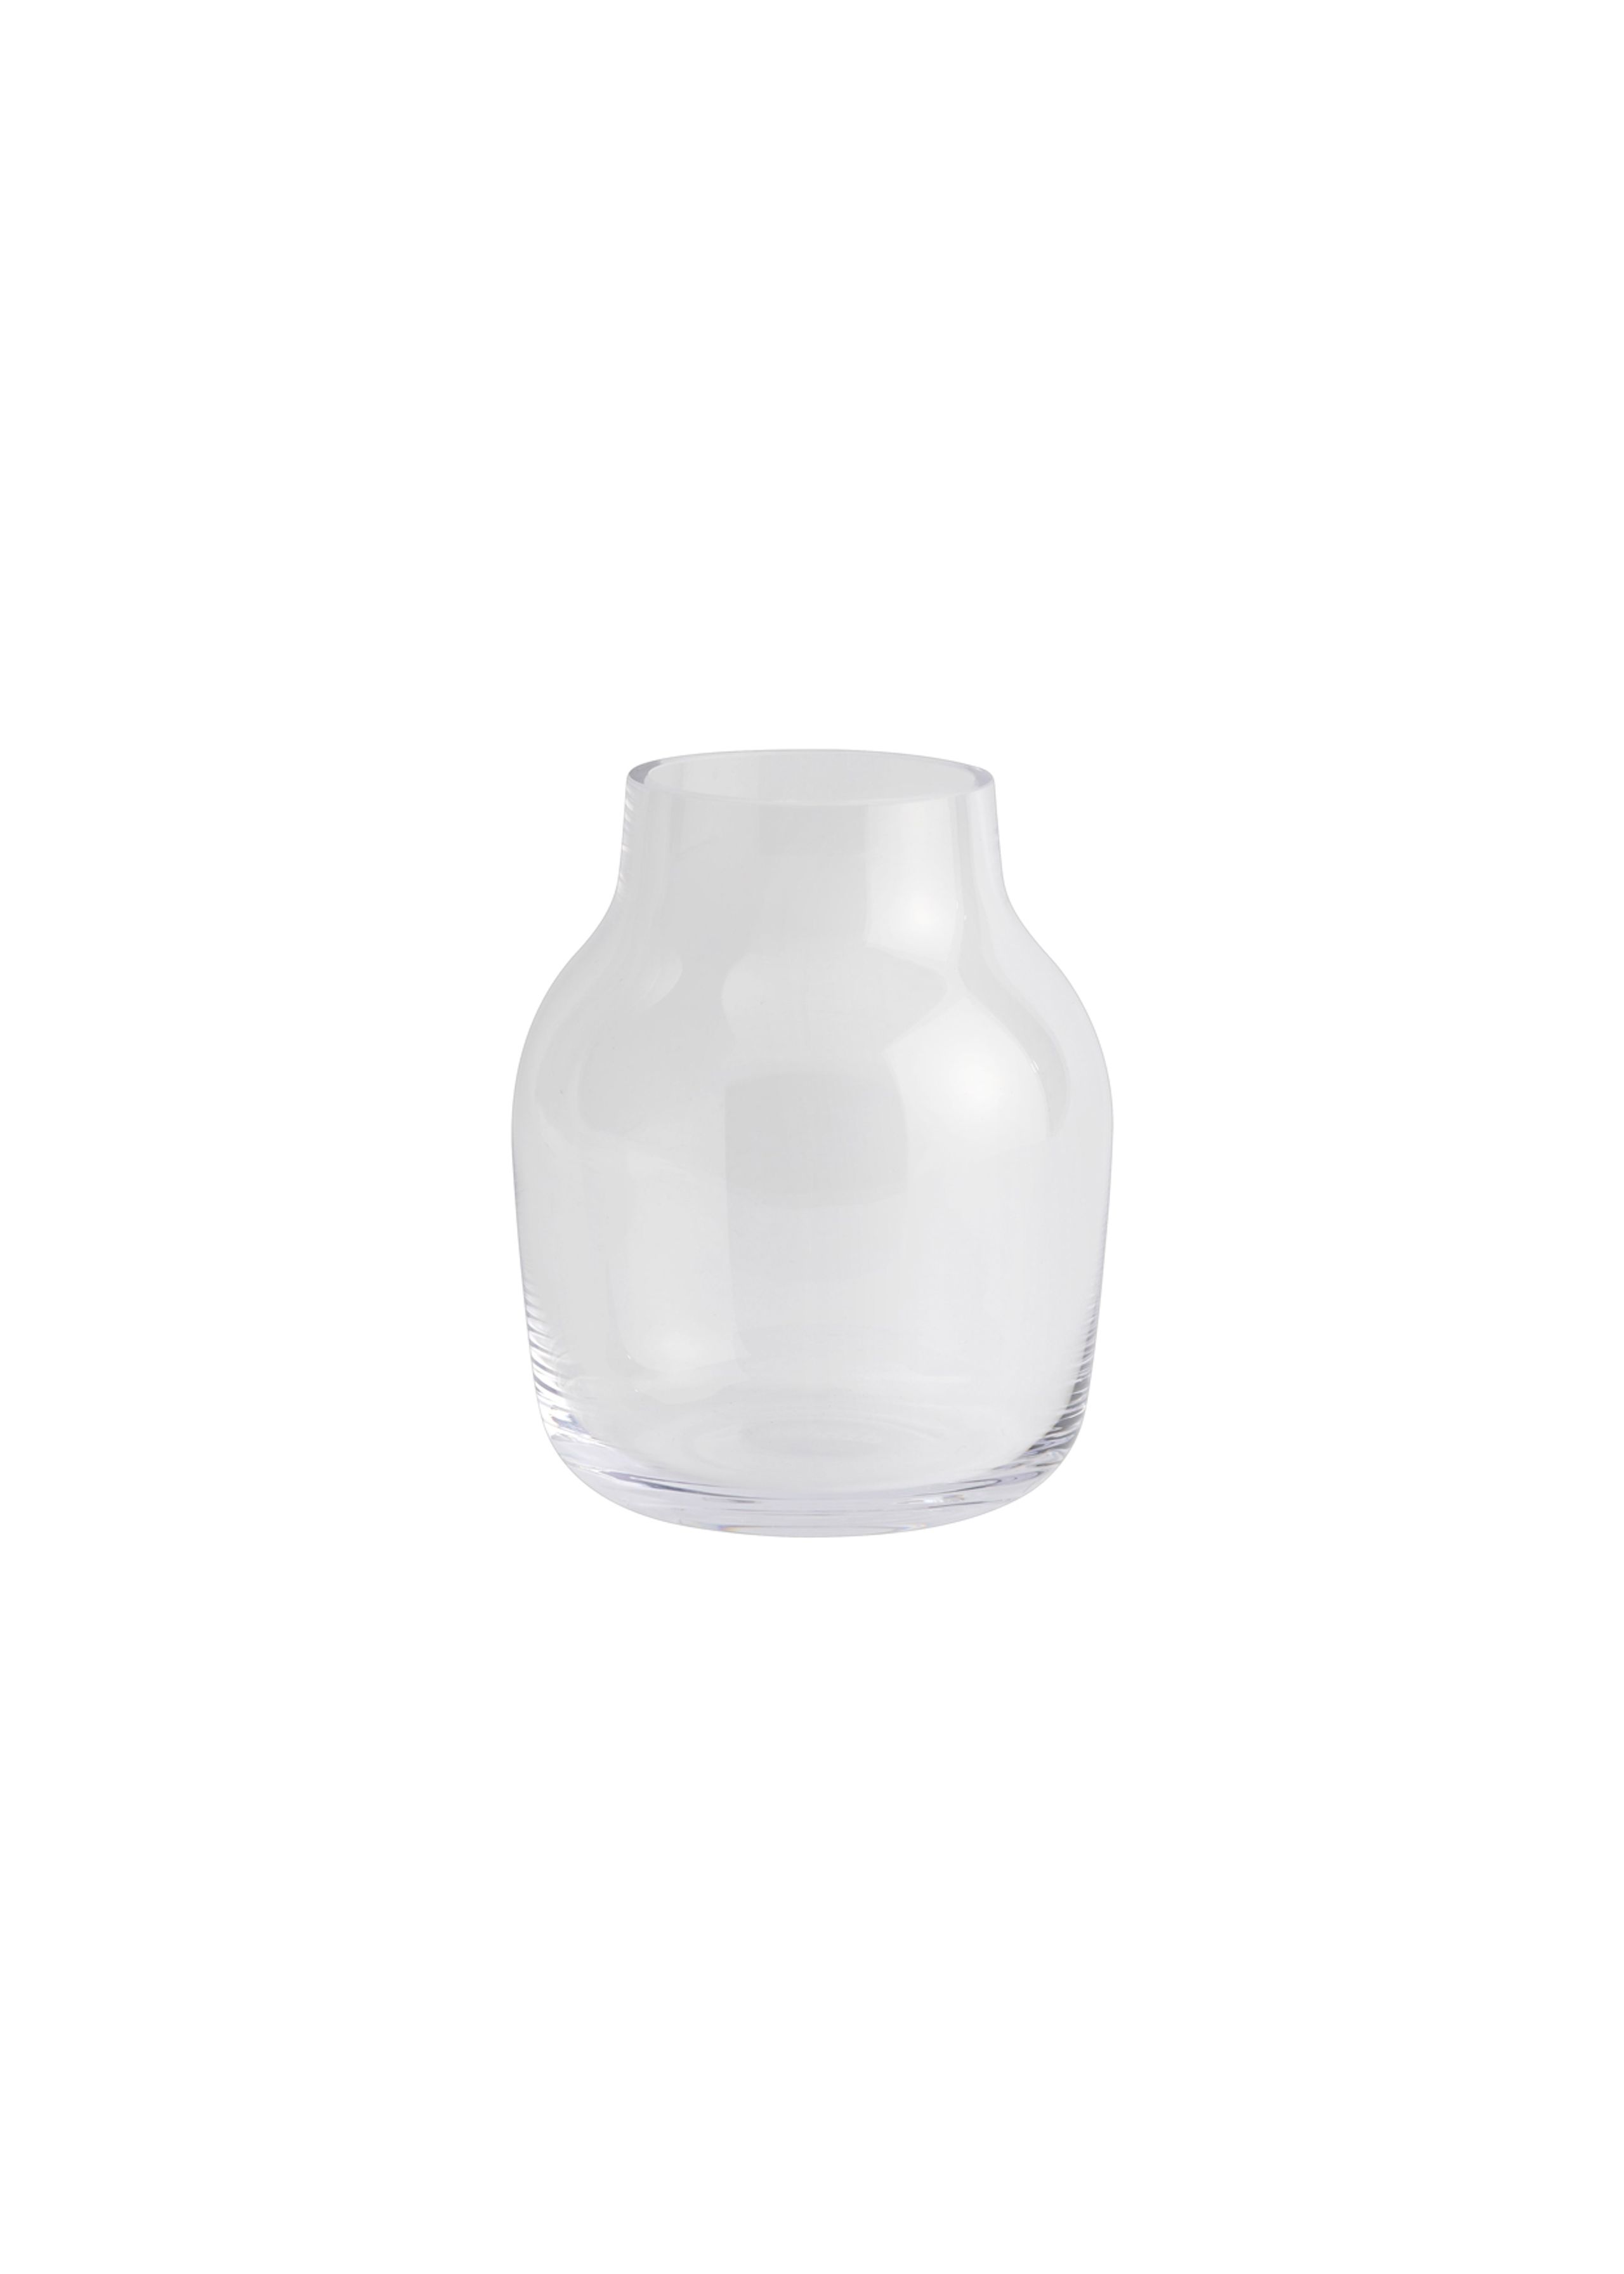 Muuto - Vase - Silent Vase - Clear - Small